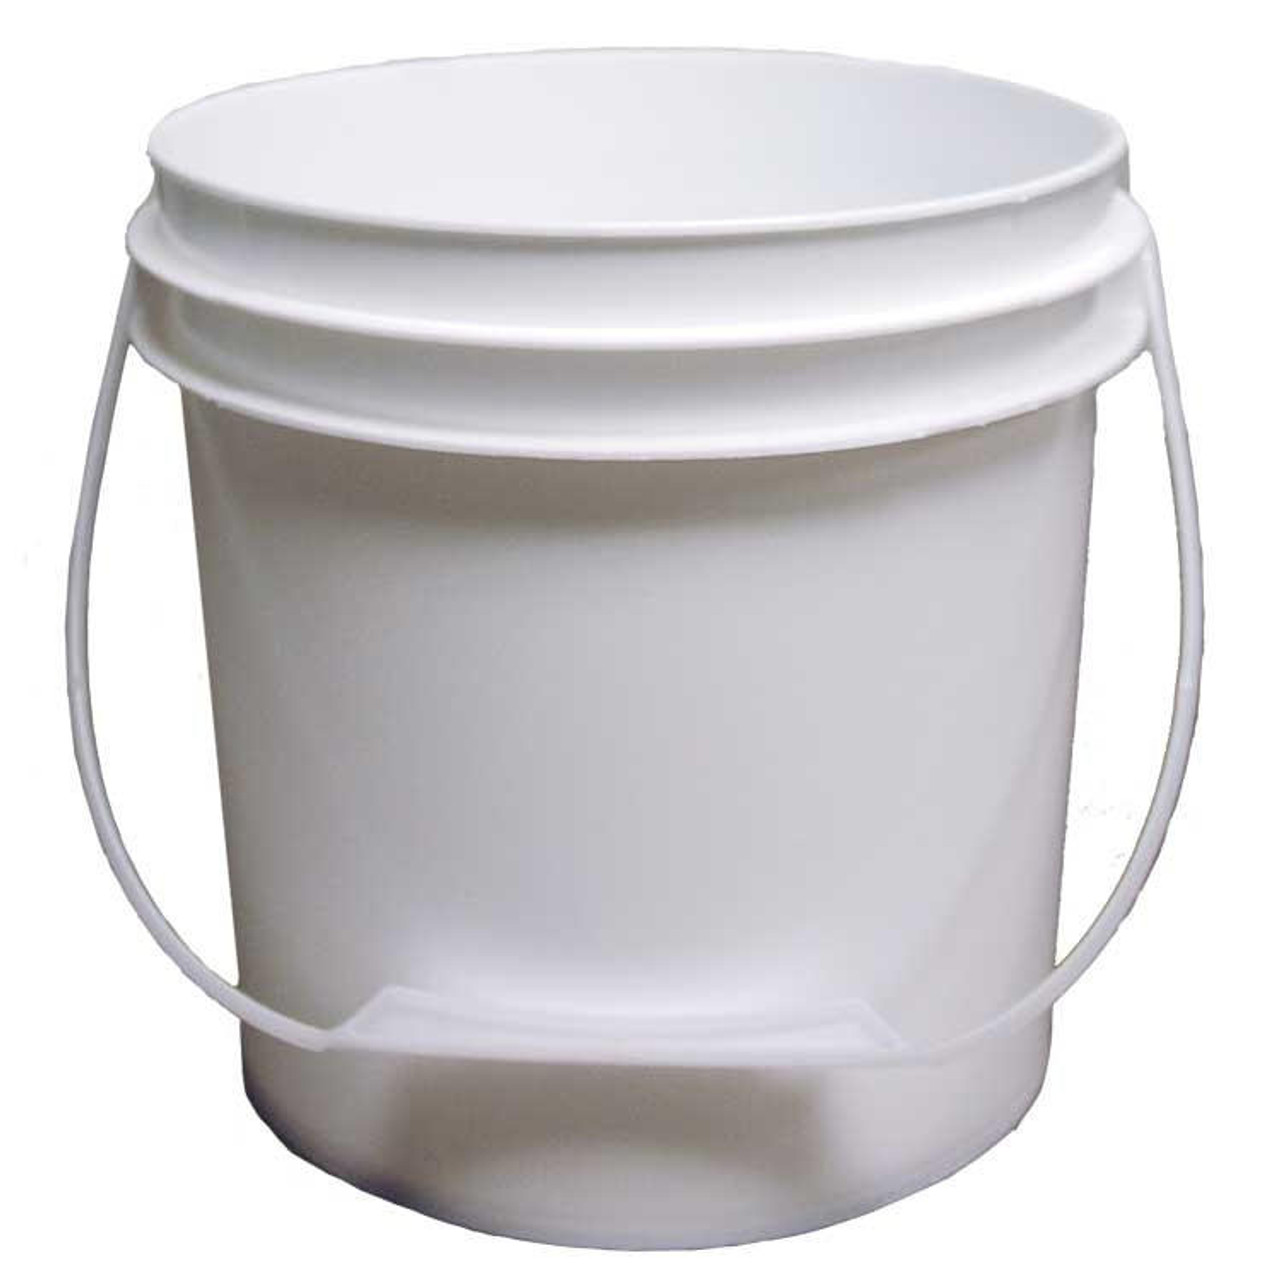 1 Gallon Plastic Bucket, Open Head, Tear Tab Lid - White